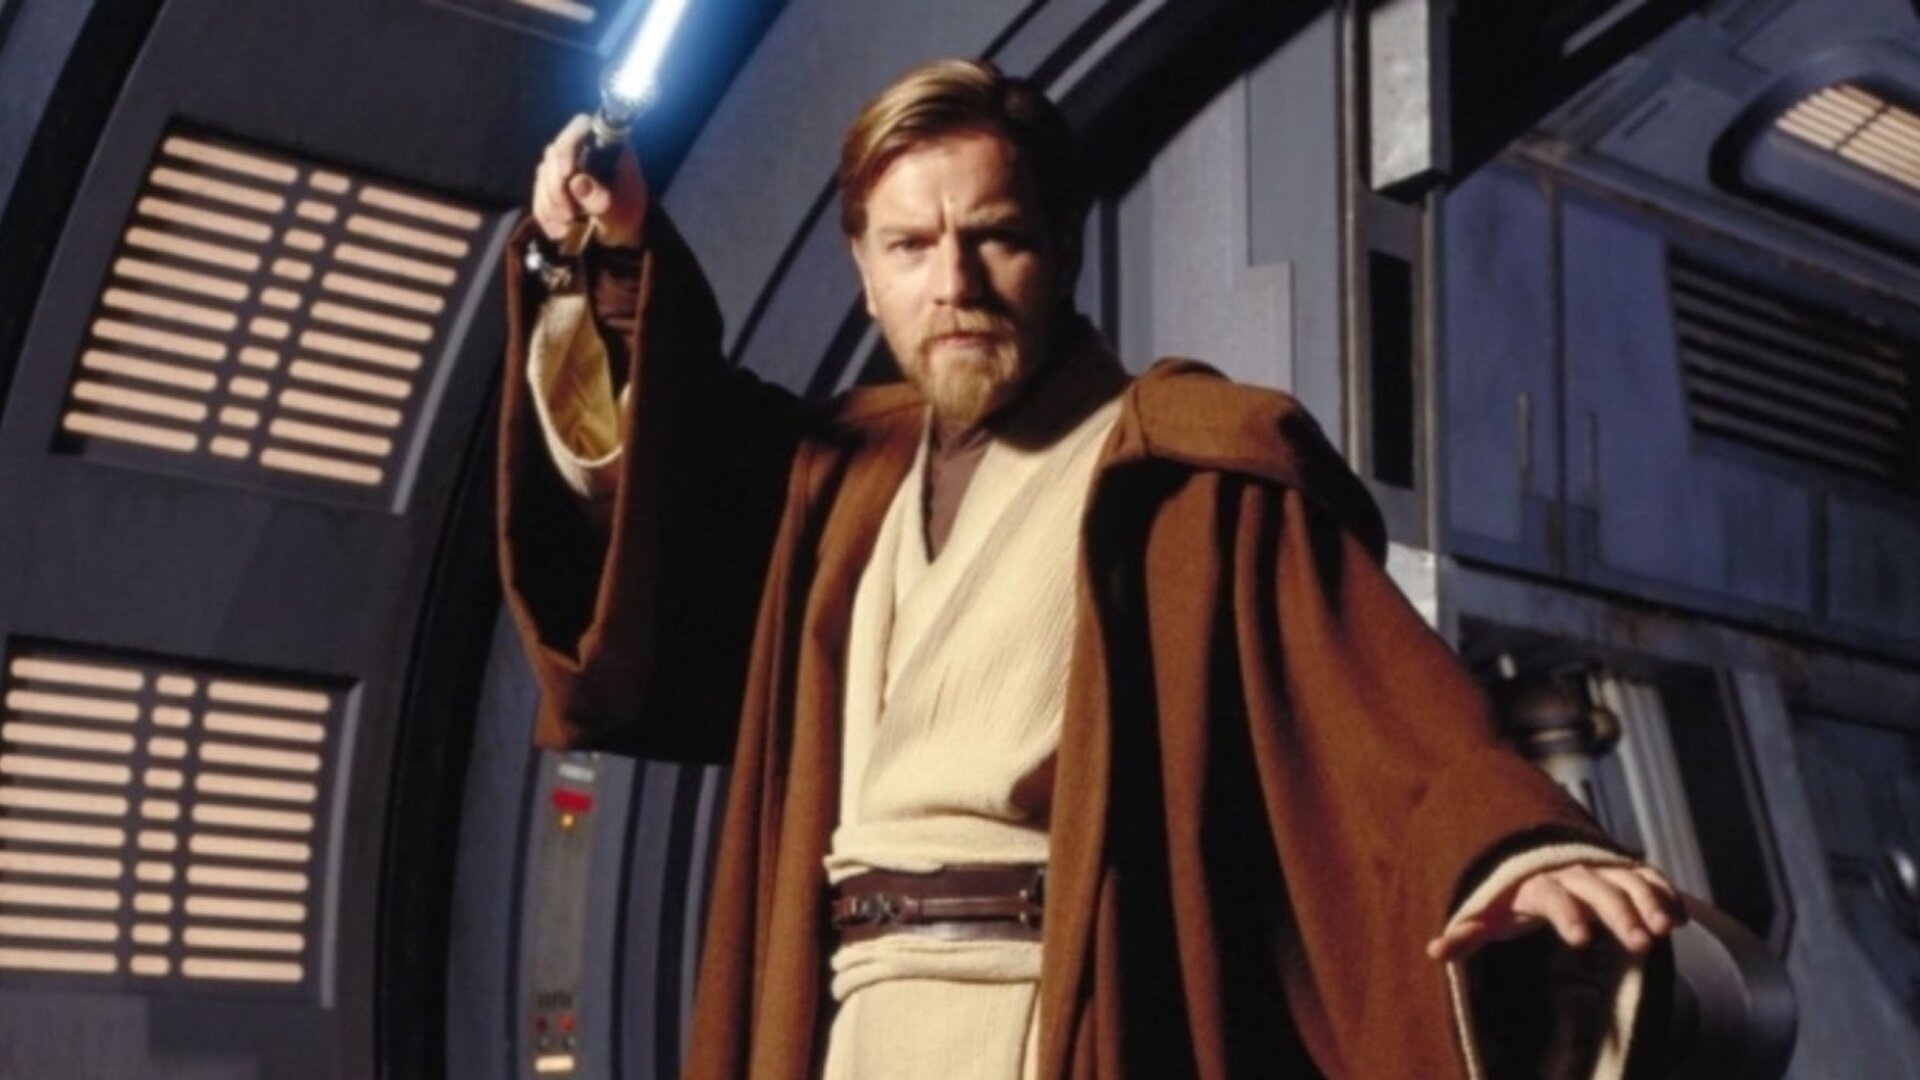 Star Wars Prequels Young Obi-Wan Kenobi 4 x 6 Photo Postcard #8 NEW UNUSED 